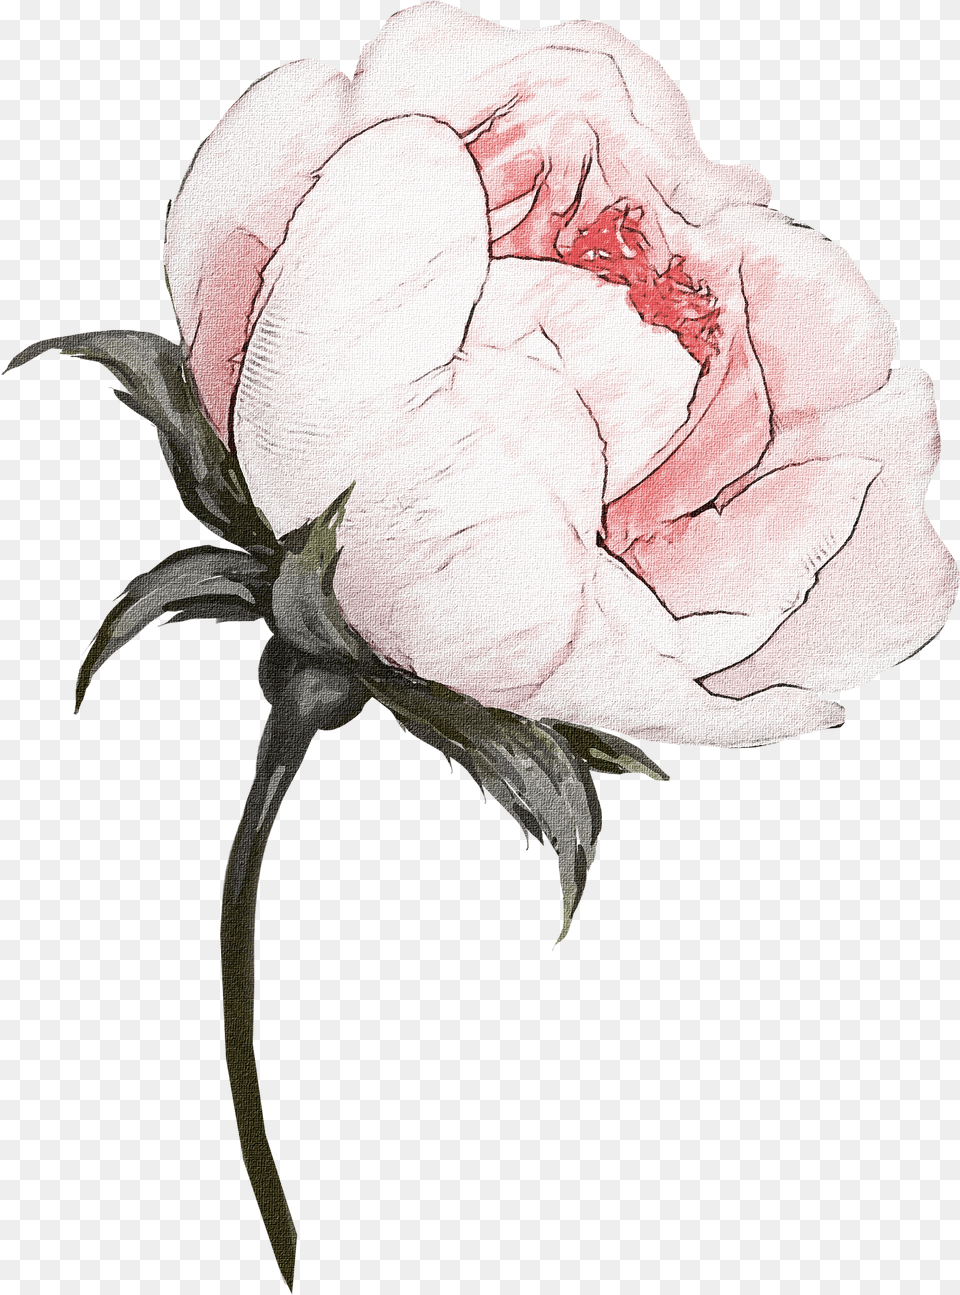 Flower, Plant, Rose, Carnation, Petal Free Png Download